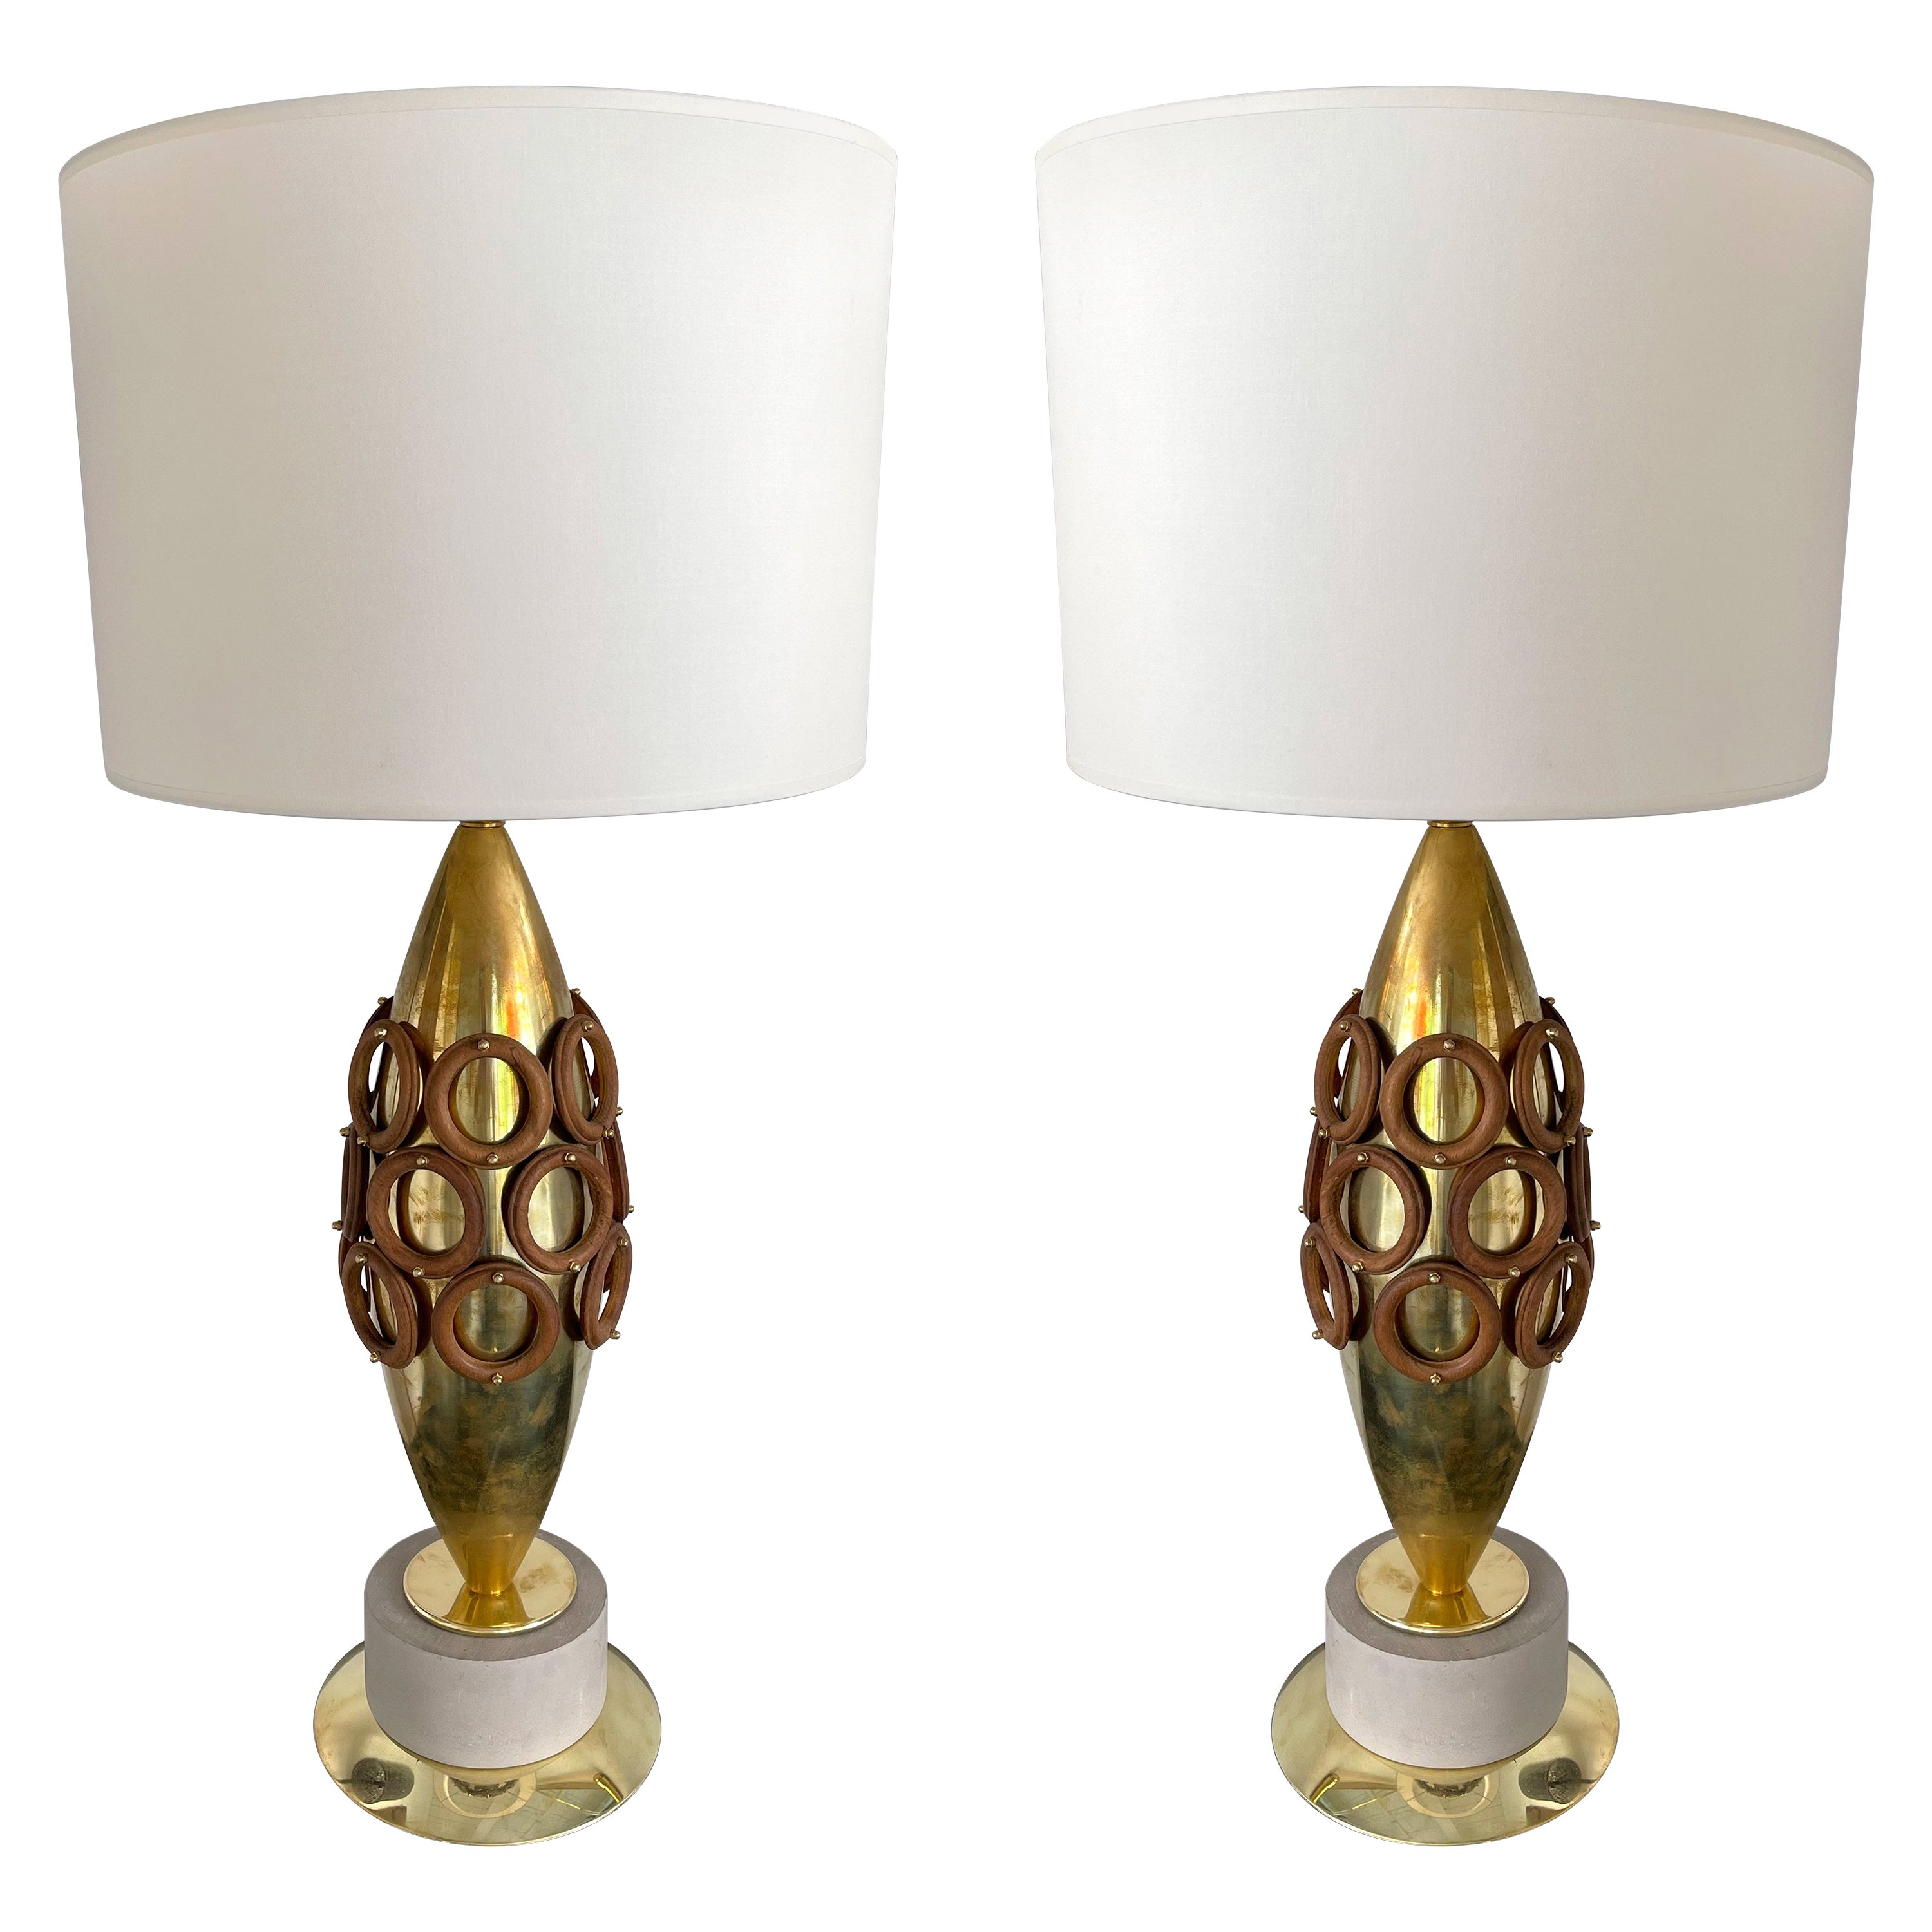 Paire de lampes contemporaines en laiton et anneaux en bois, Italie